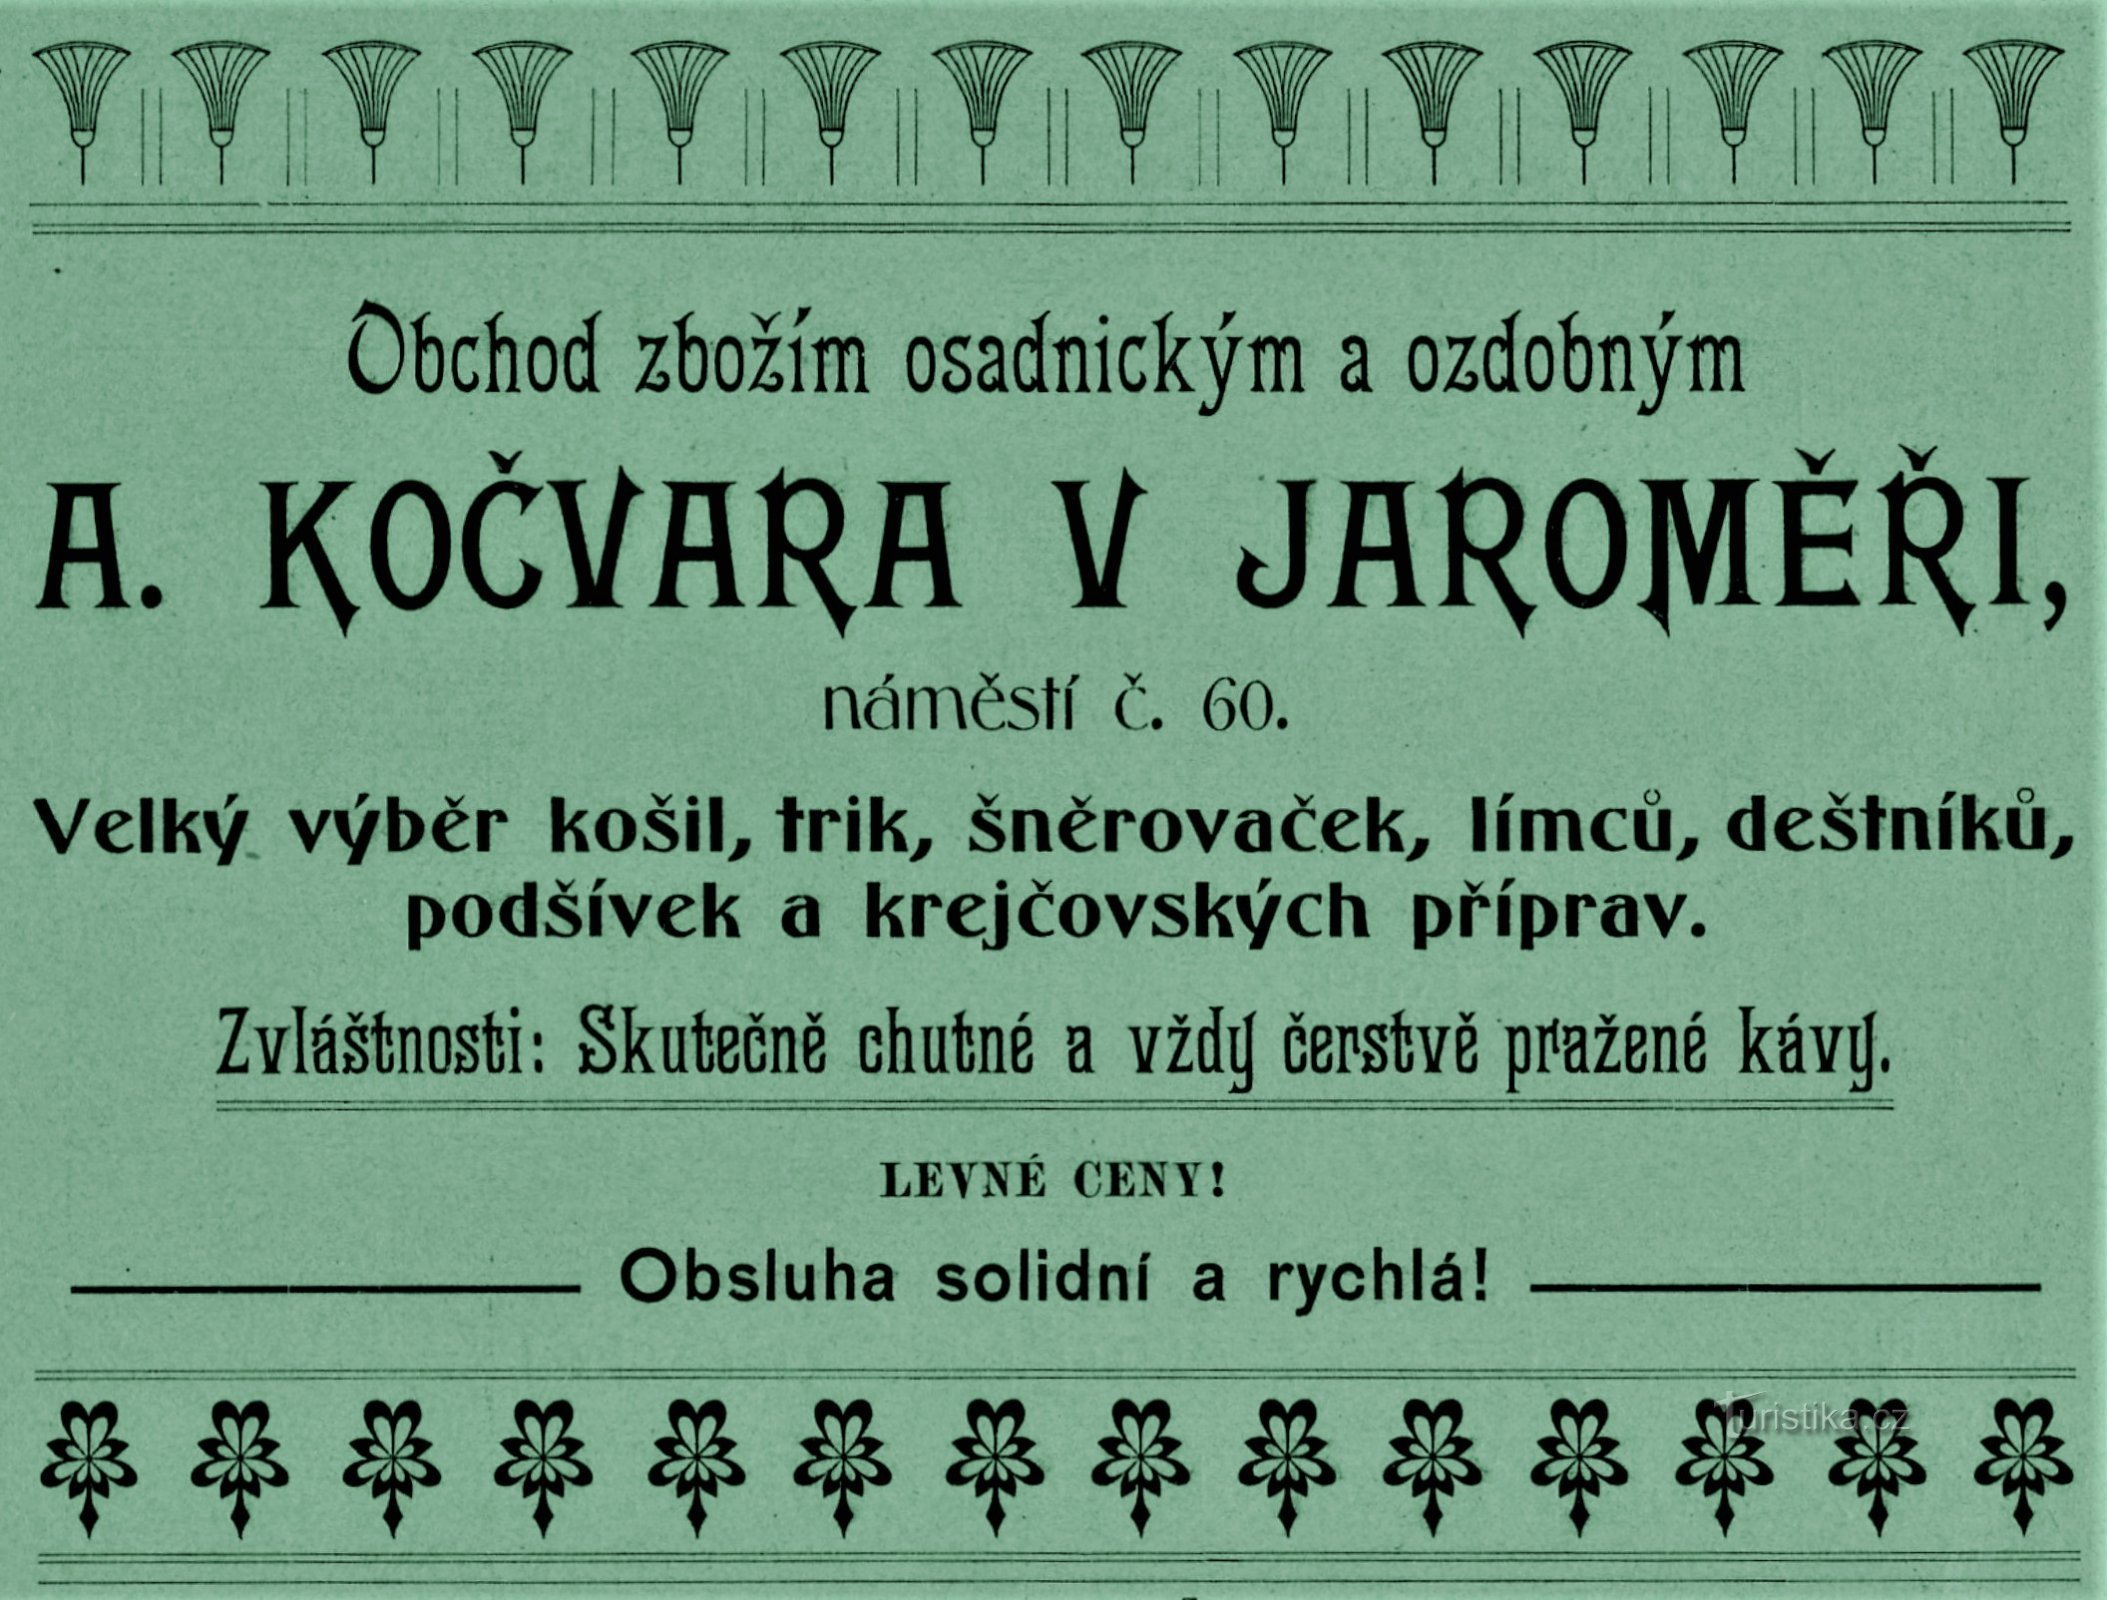 Сучасна реклама фірми А. Кочвара в Яромержі 1903 р.